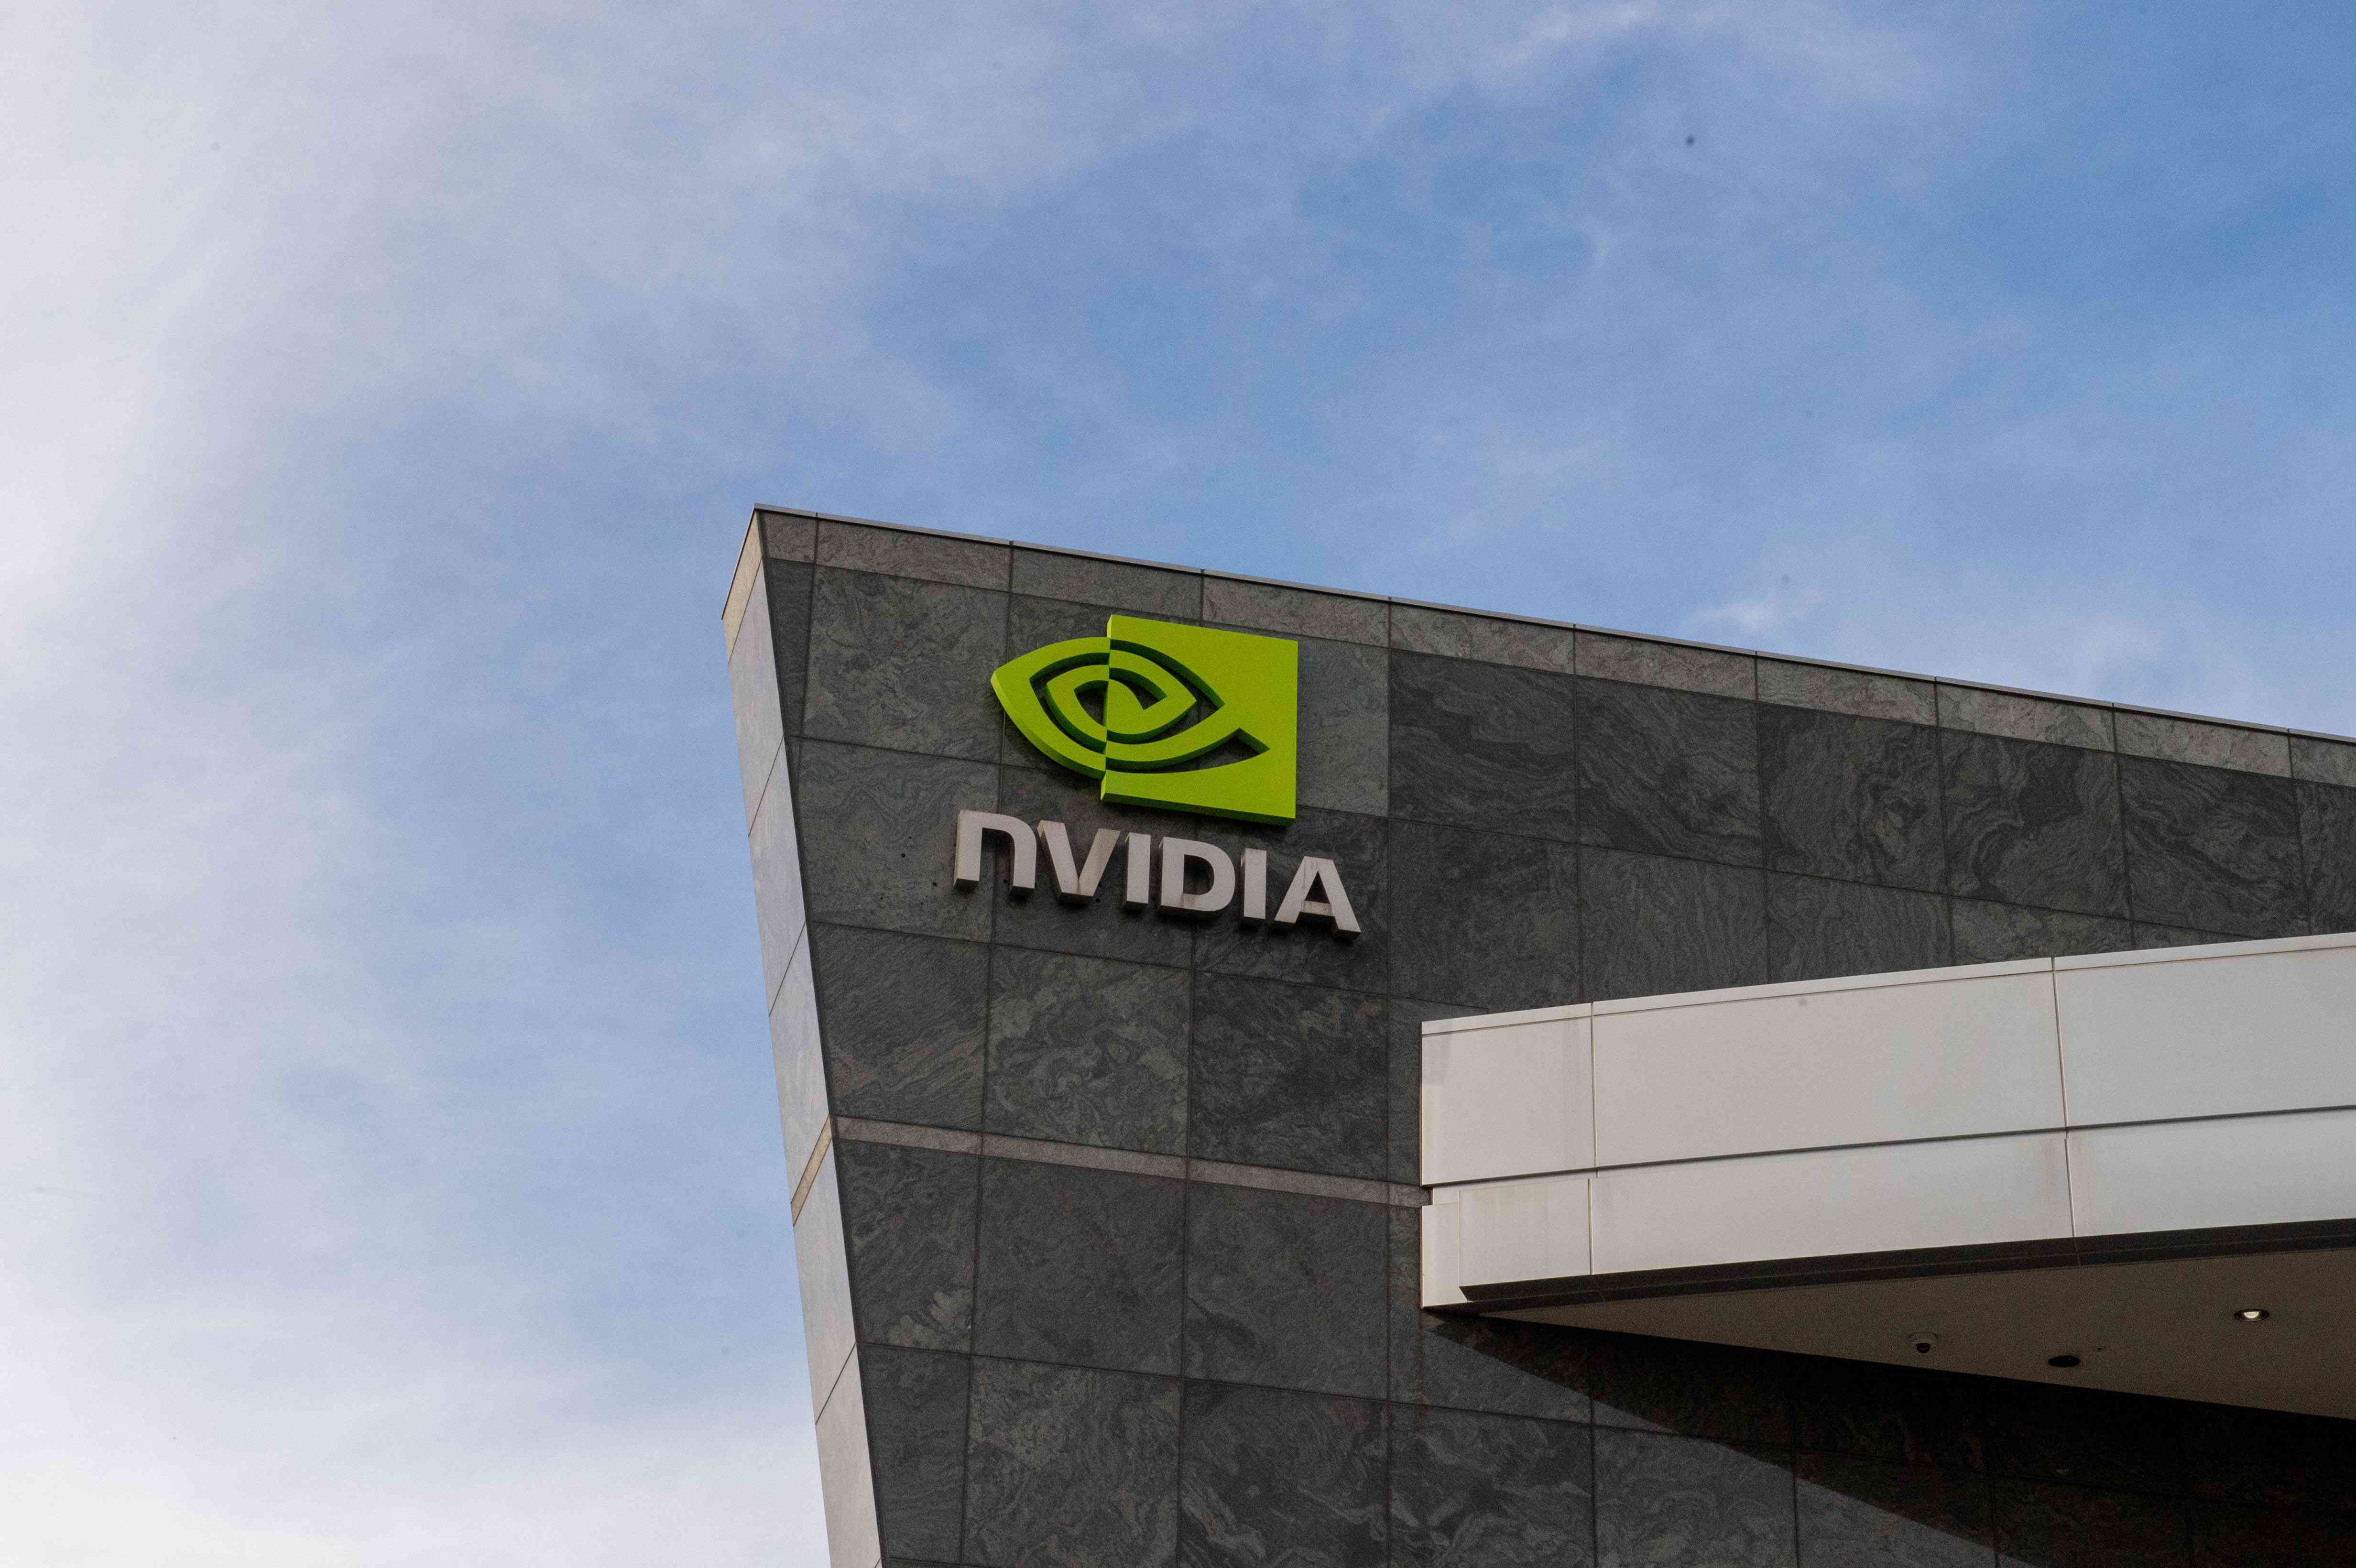 Nvidia's company headquarters.